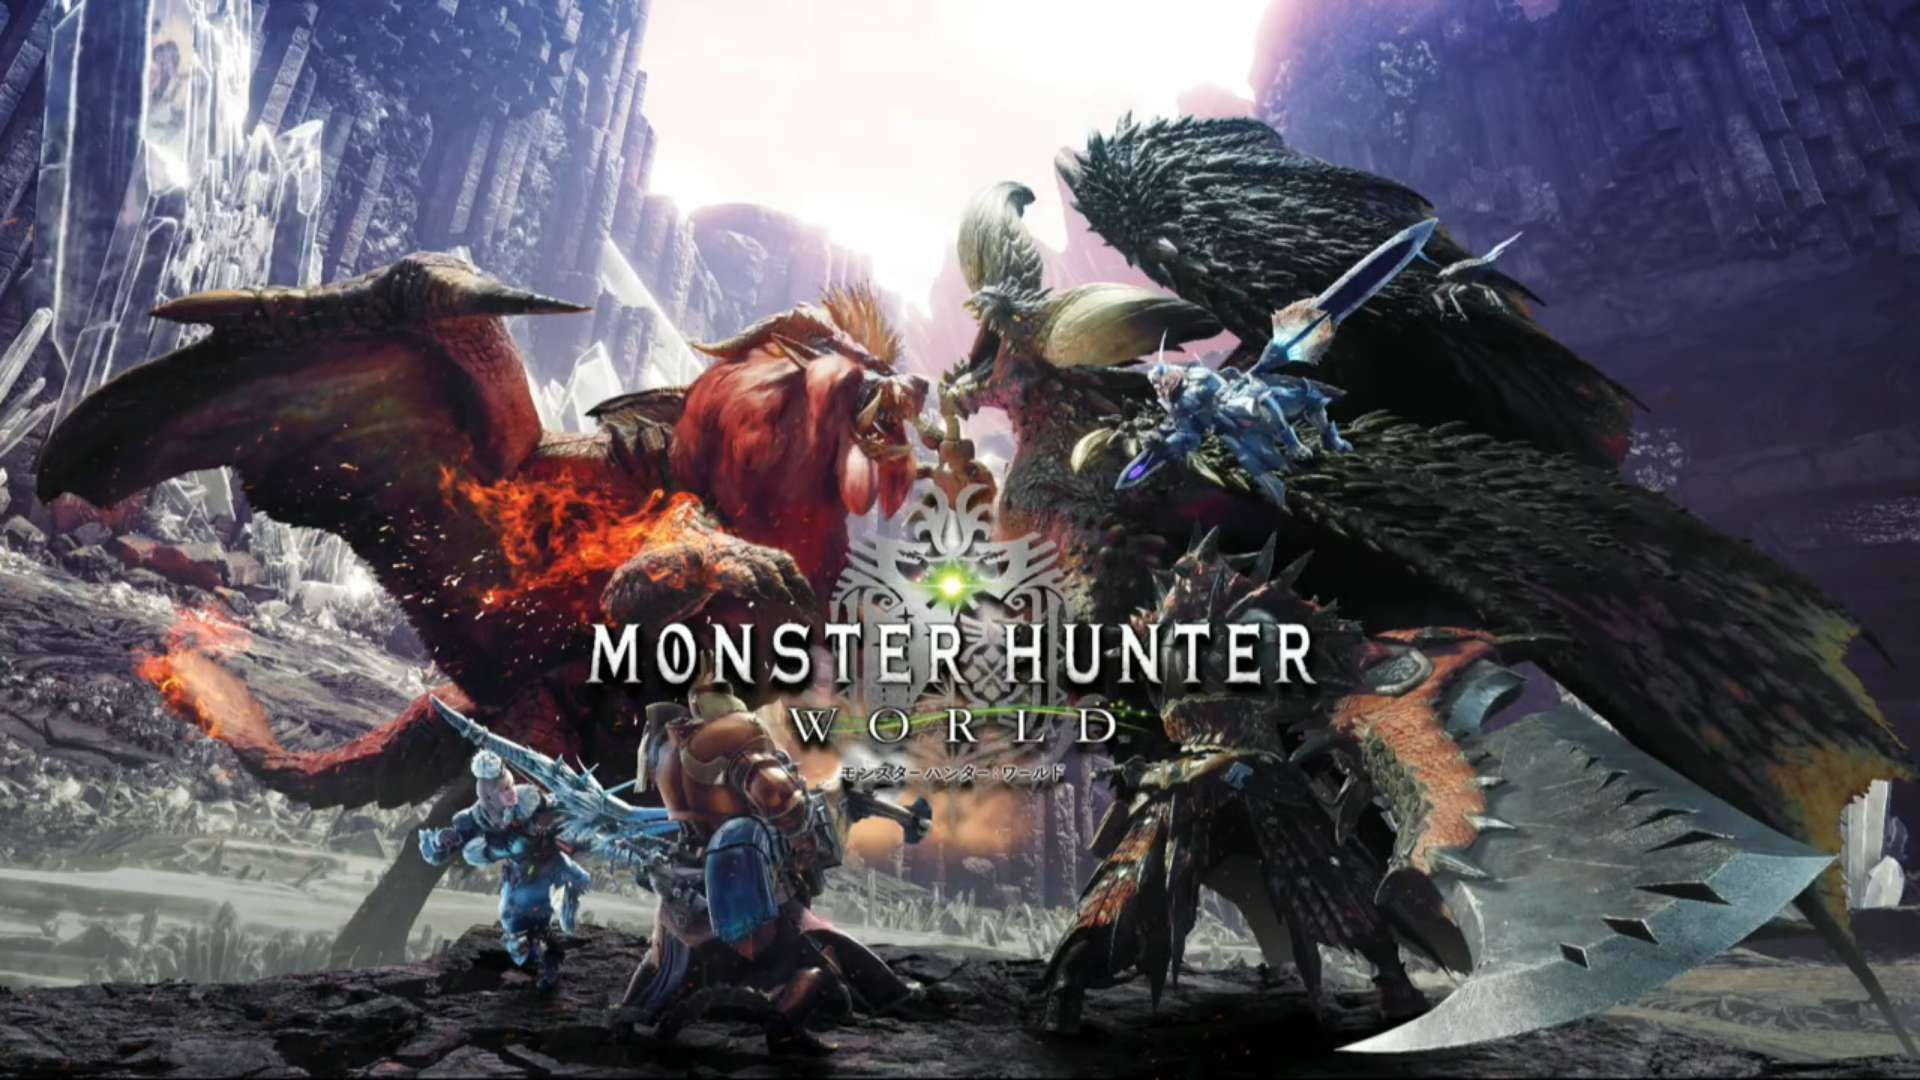 Monster Hunter World Wallpaper Images